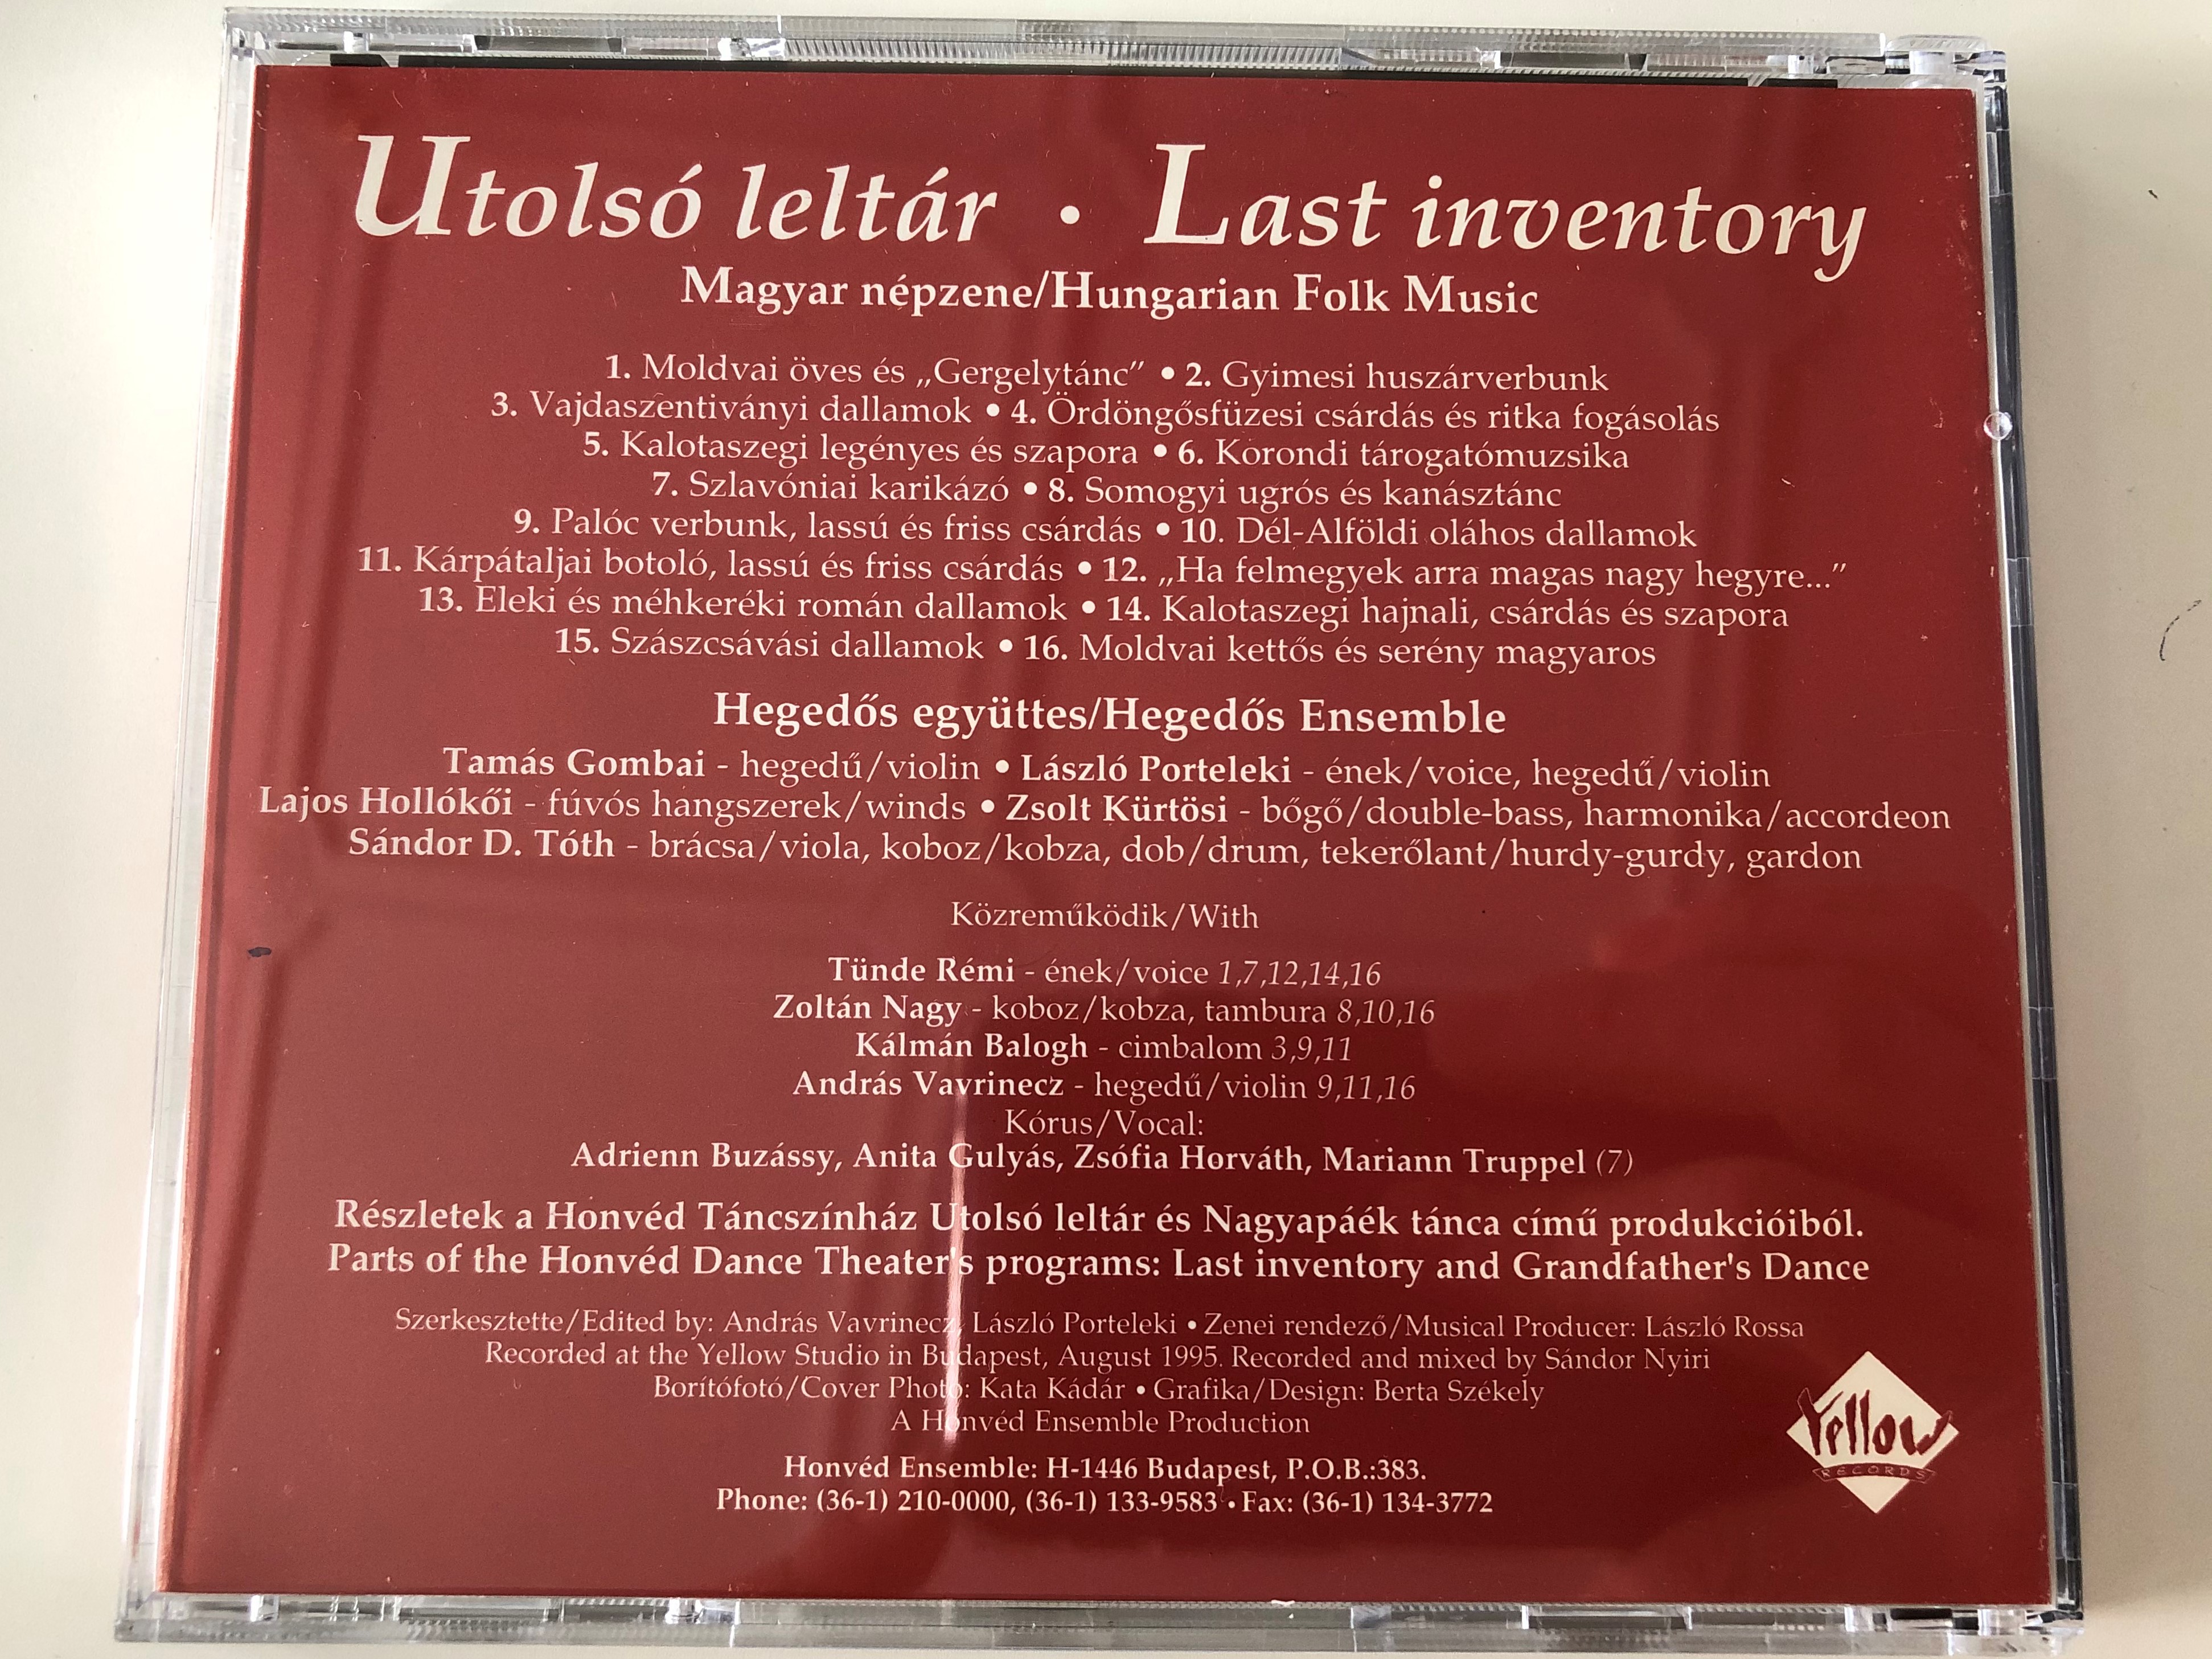 utols-lelt-r-magyar-nepzene-last-inventory-hungarian-folk-music-honv-d-ensemble-budapest-audio-cd-1995-stereo-yrcd-26545-4-.jpg